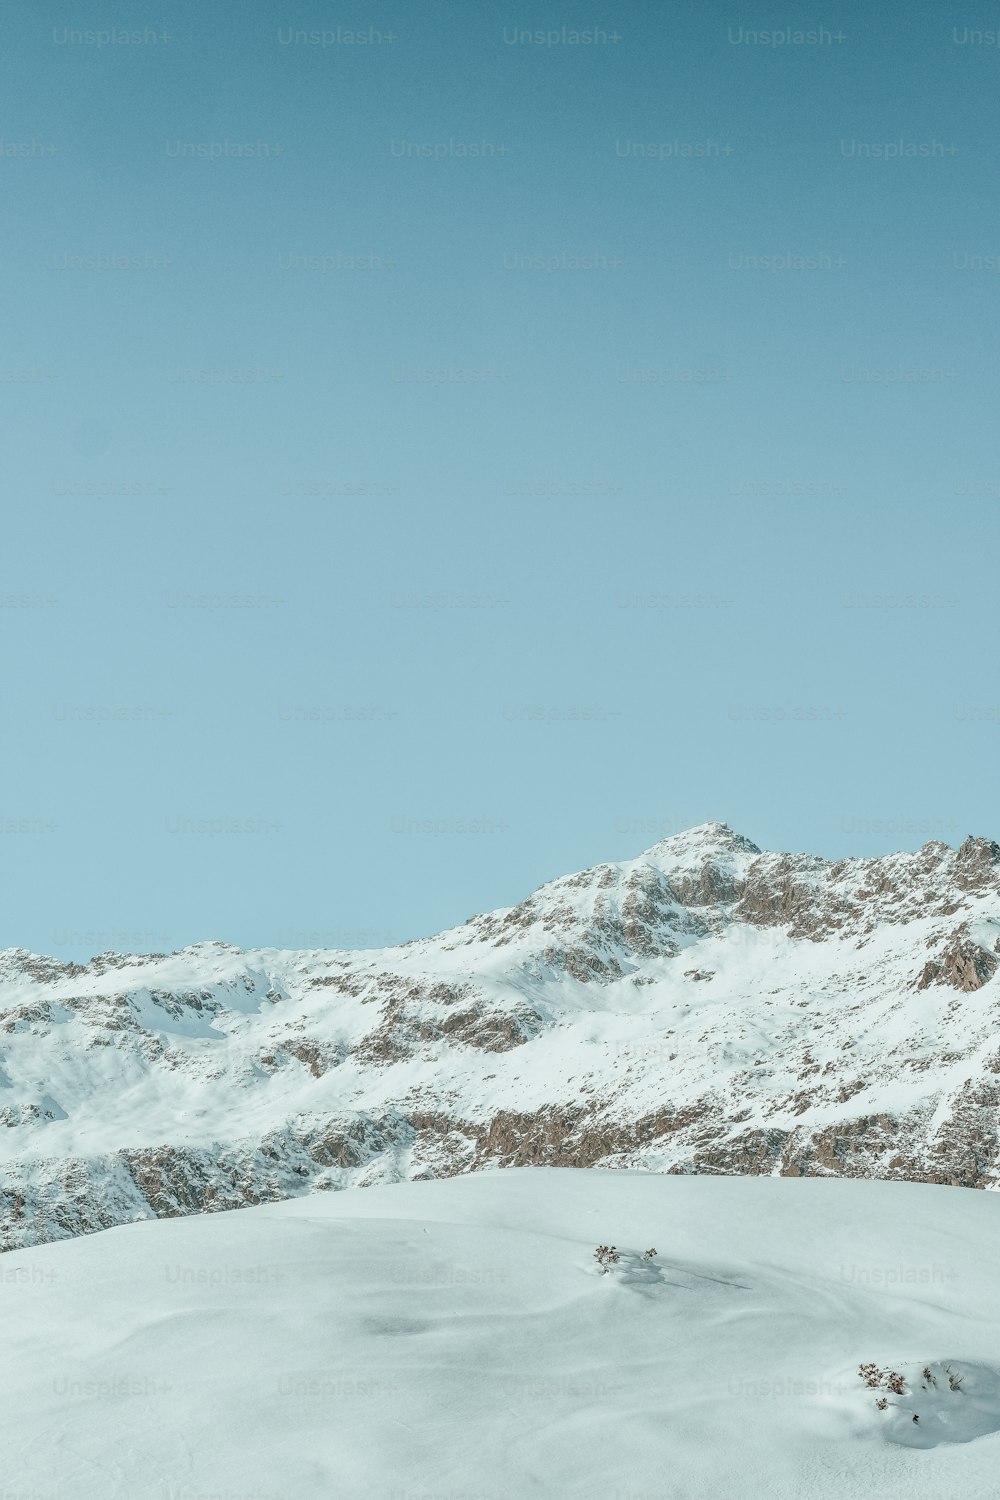 Ein Mann auf Skiern auf einem schneebedeckten Hang